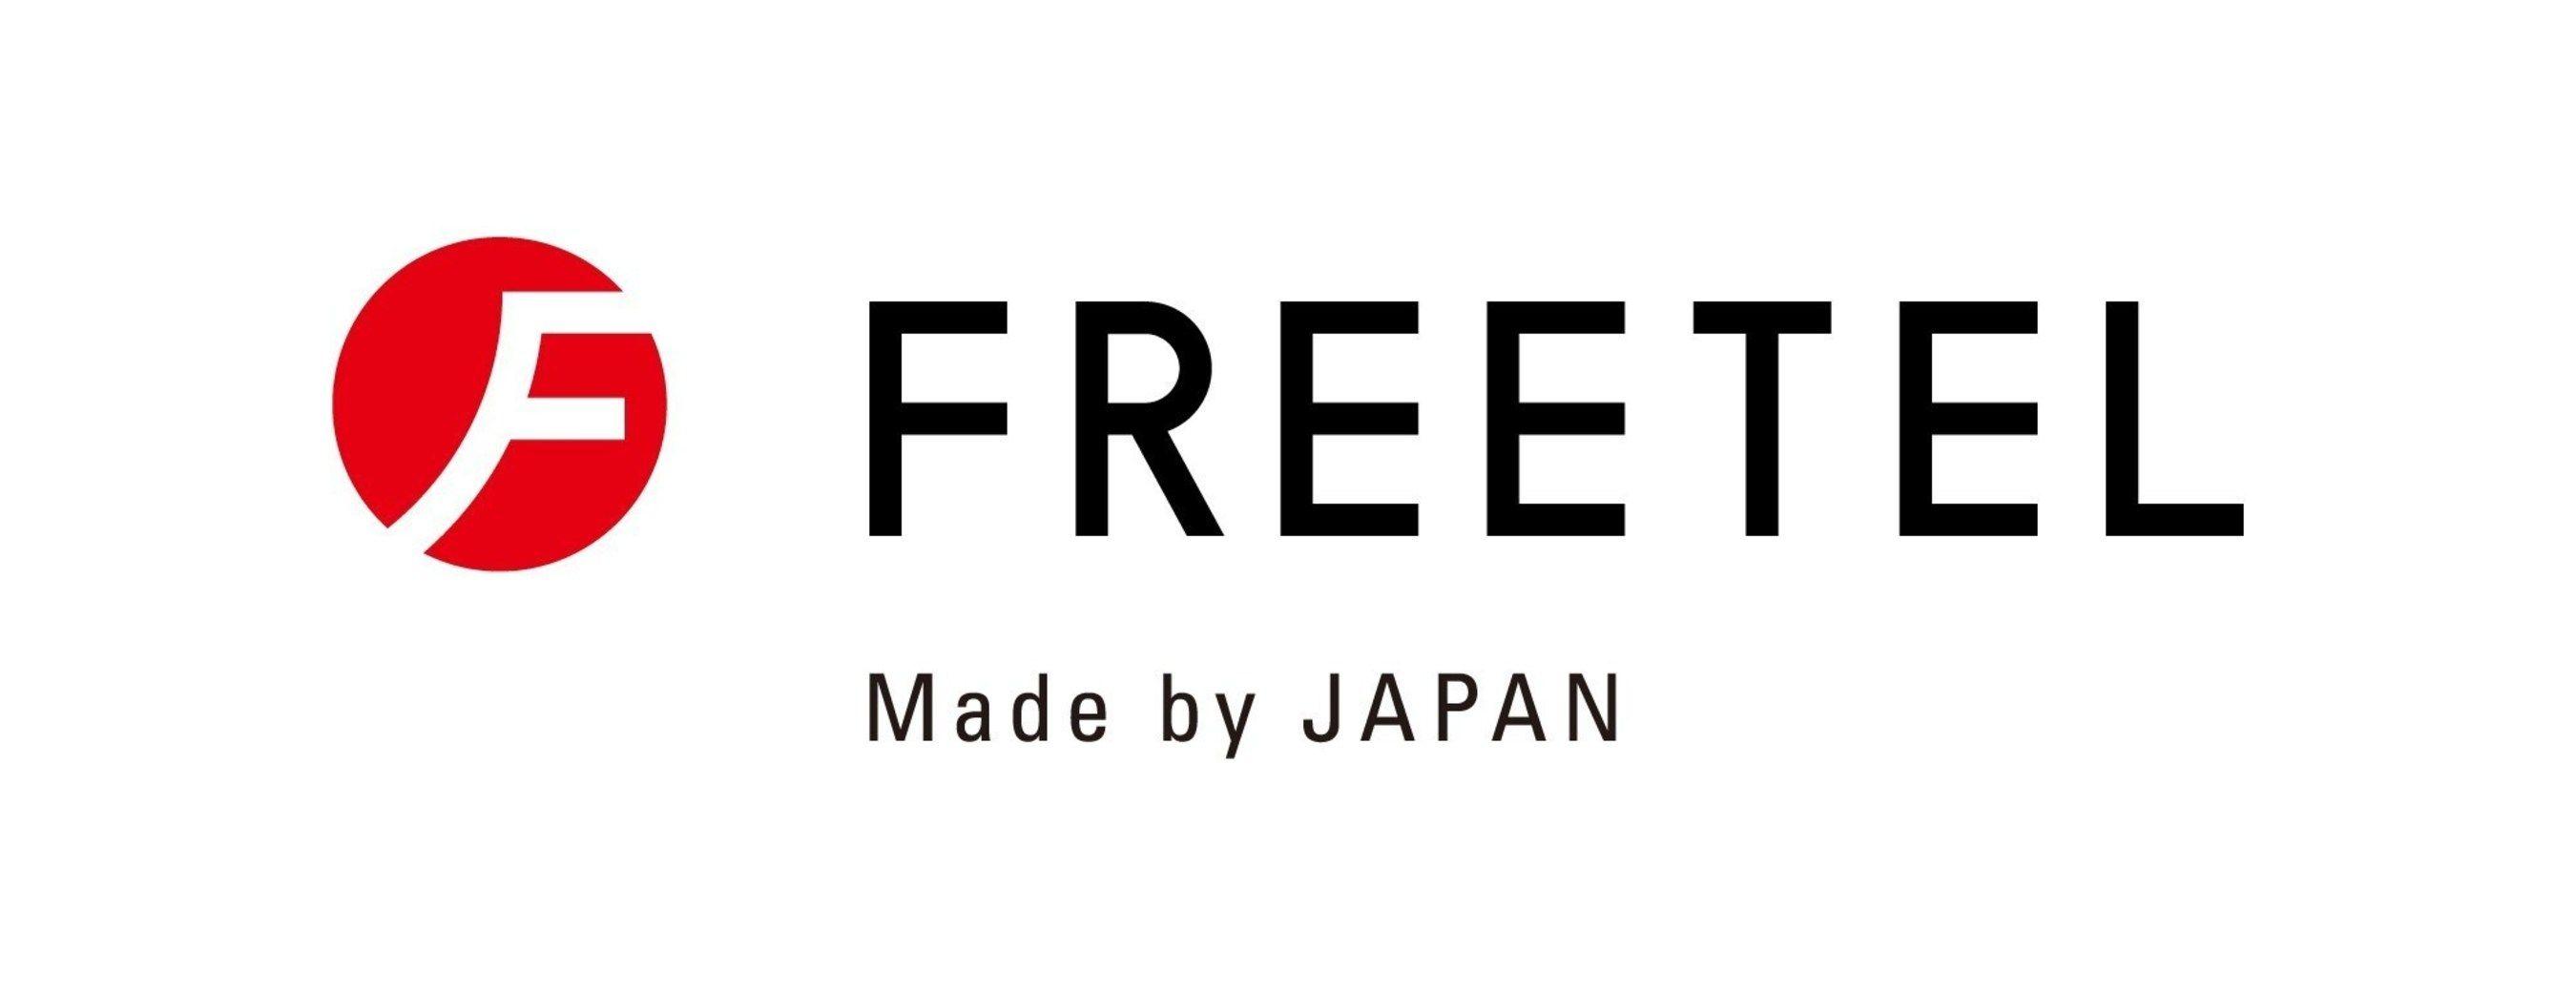 Japanese Manufacturer Logo - Japanese Mobile Handset Manufacturer U.S. Debut At